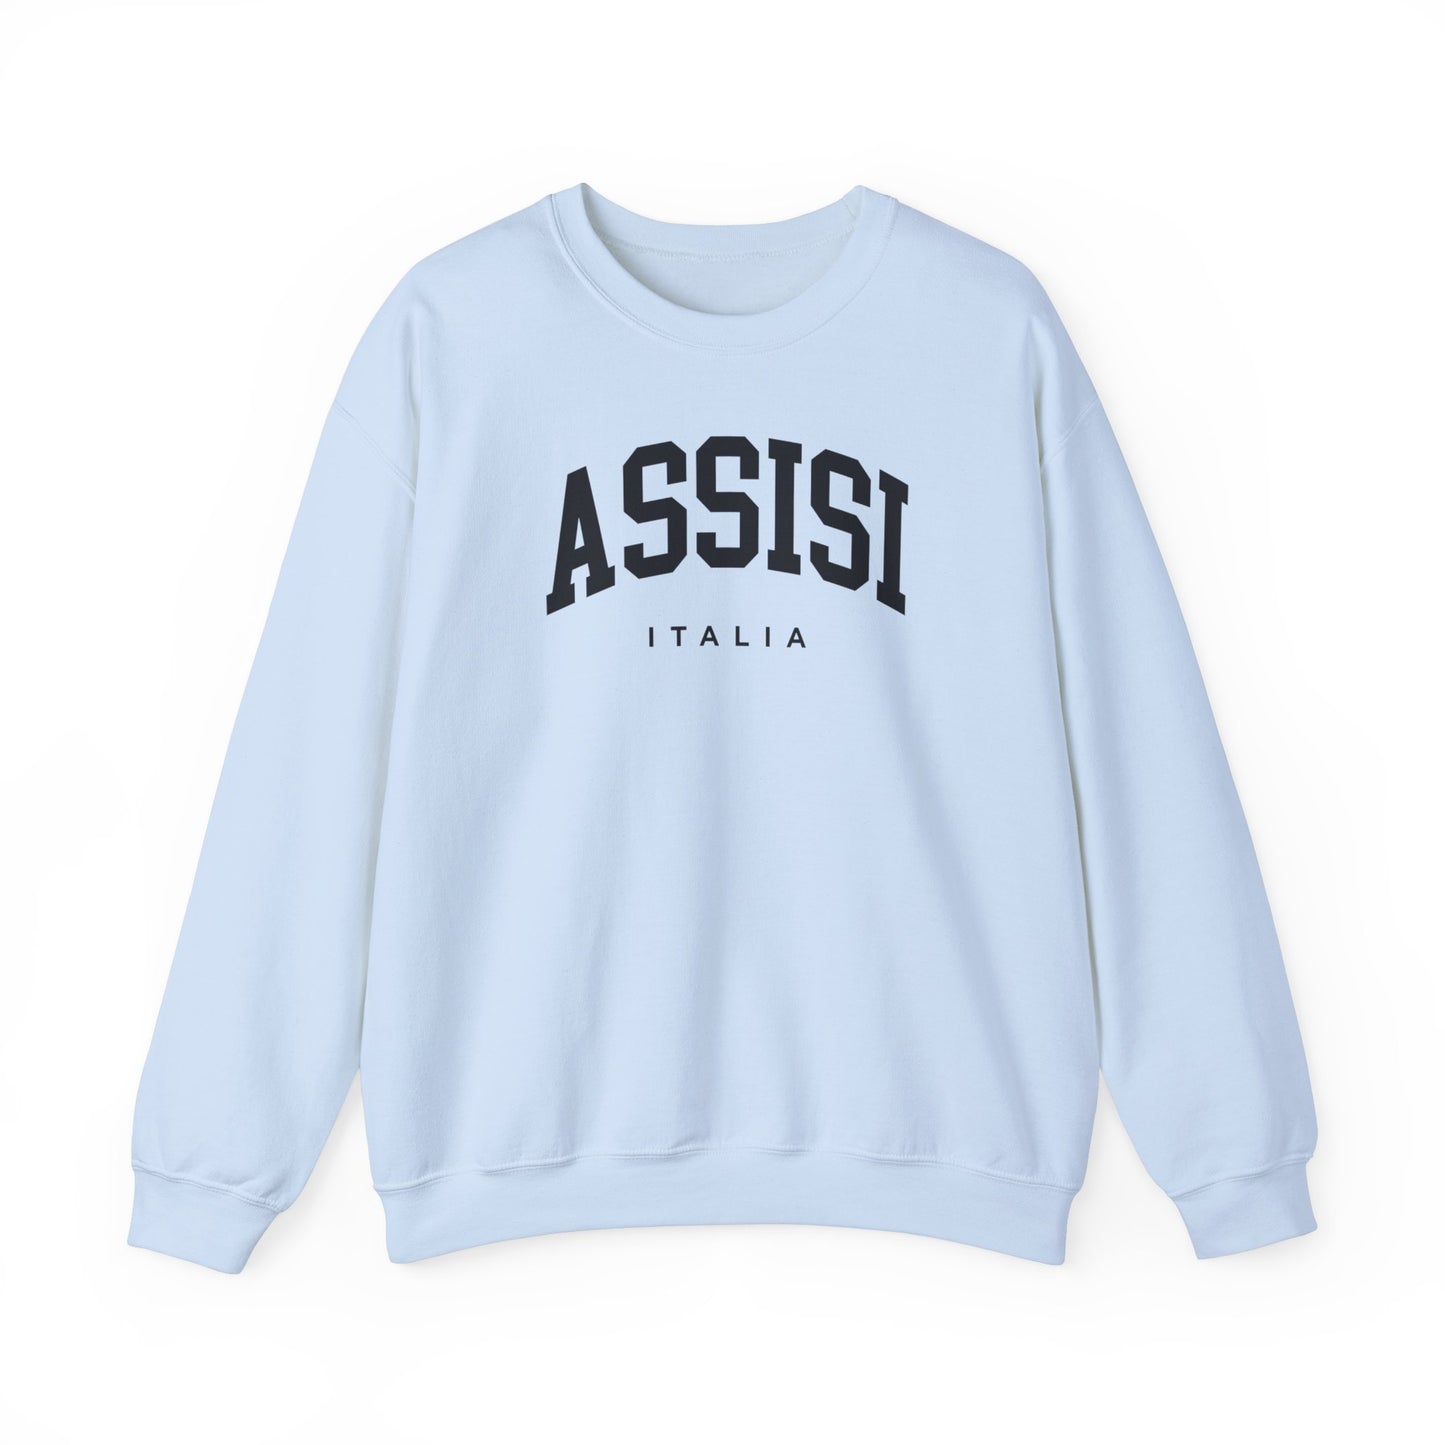 Assisi Italy Sweatshirt